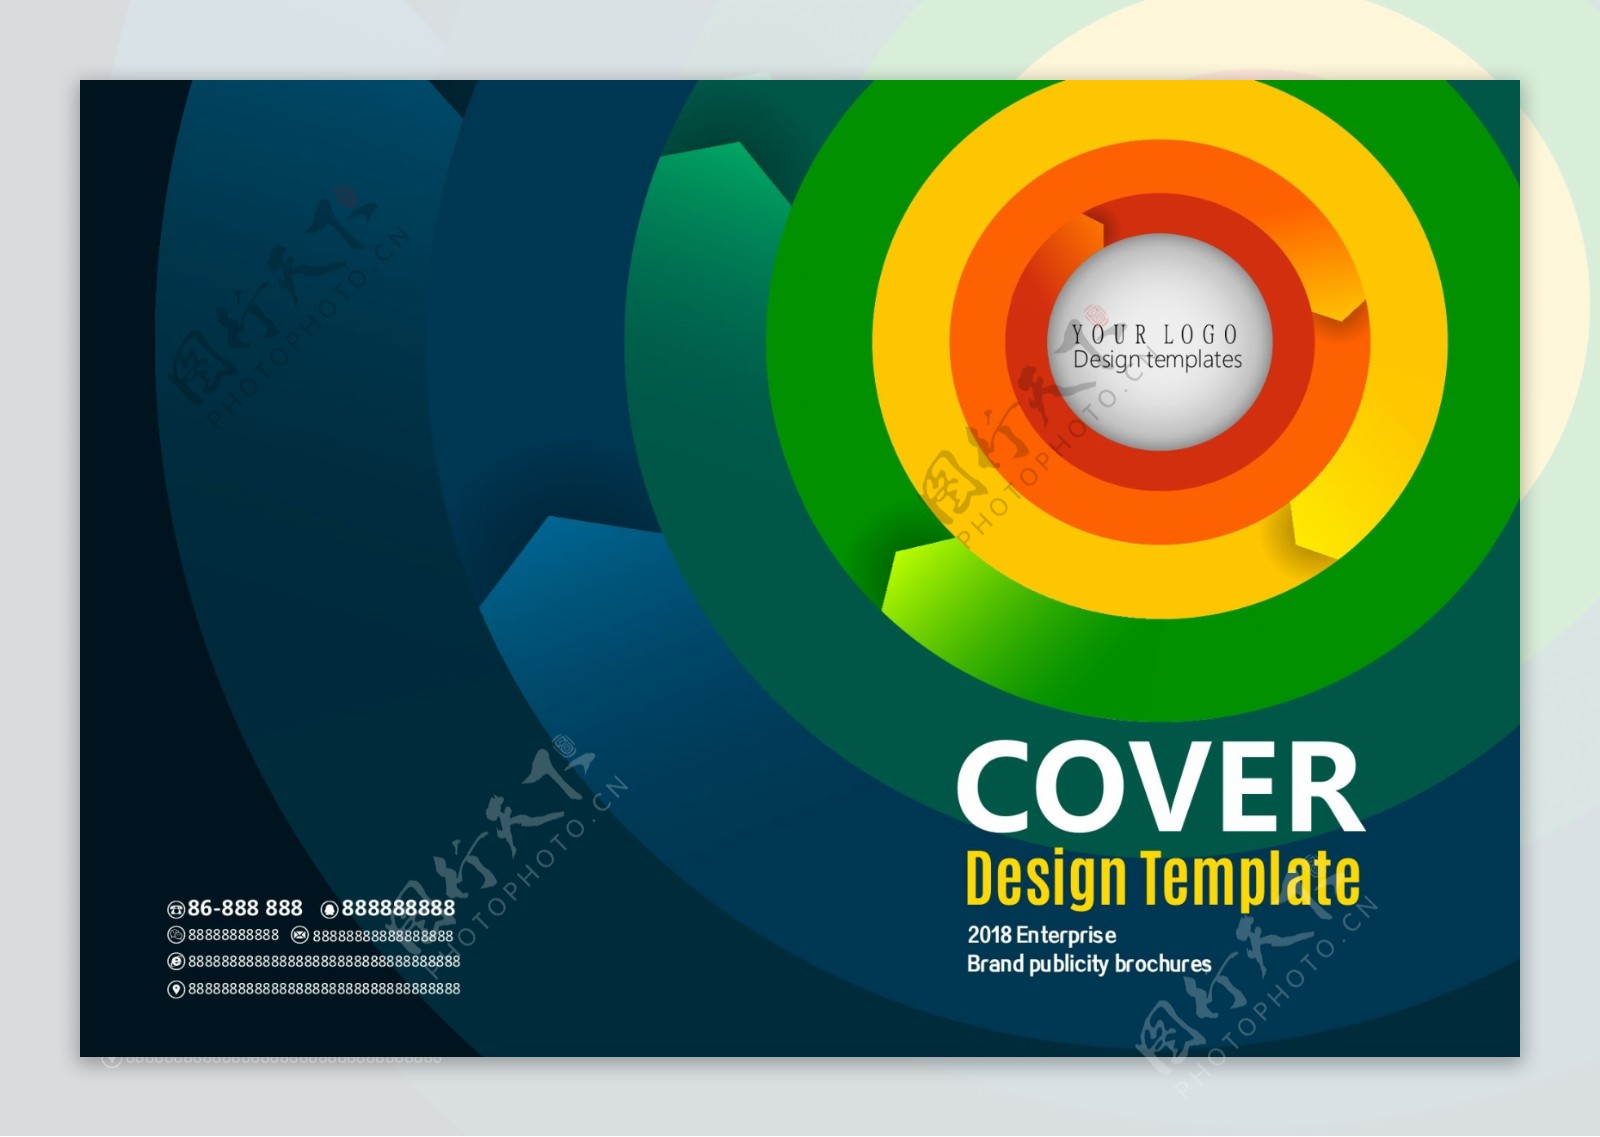 大气企业画册企业宣传册封面设计